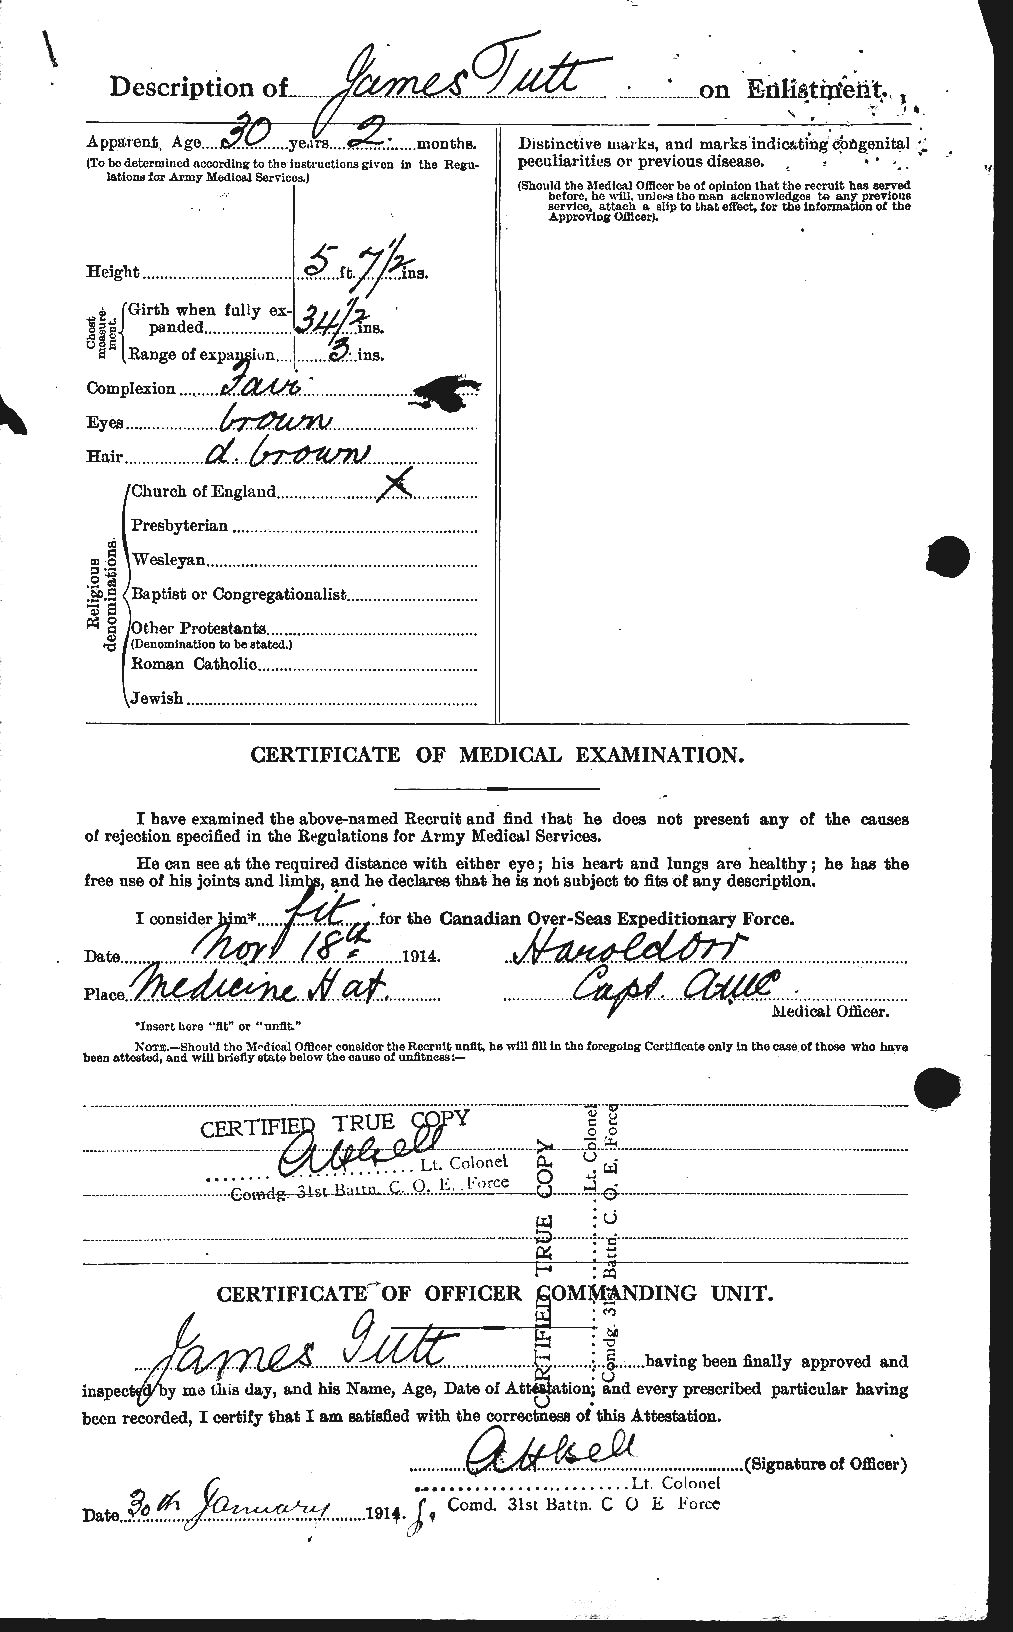 Dossiers du Personnel de la Première Guerre mondiale - CEC 645338b